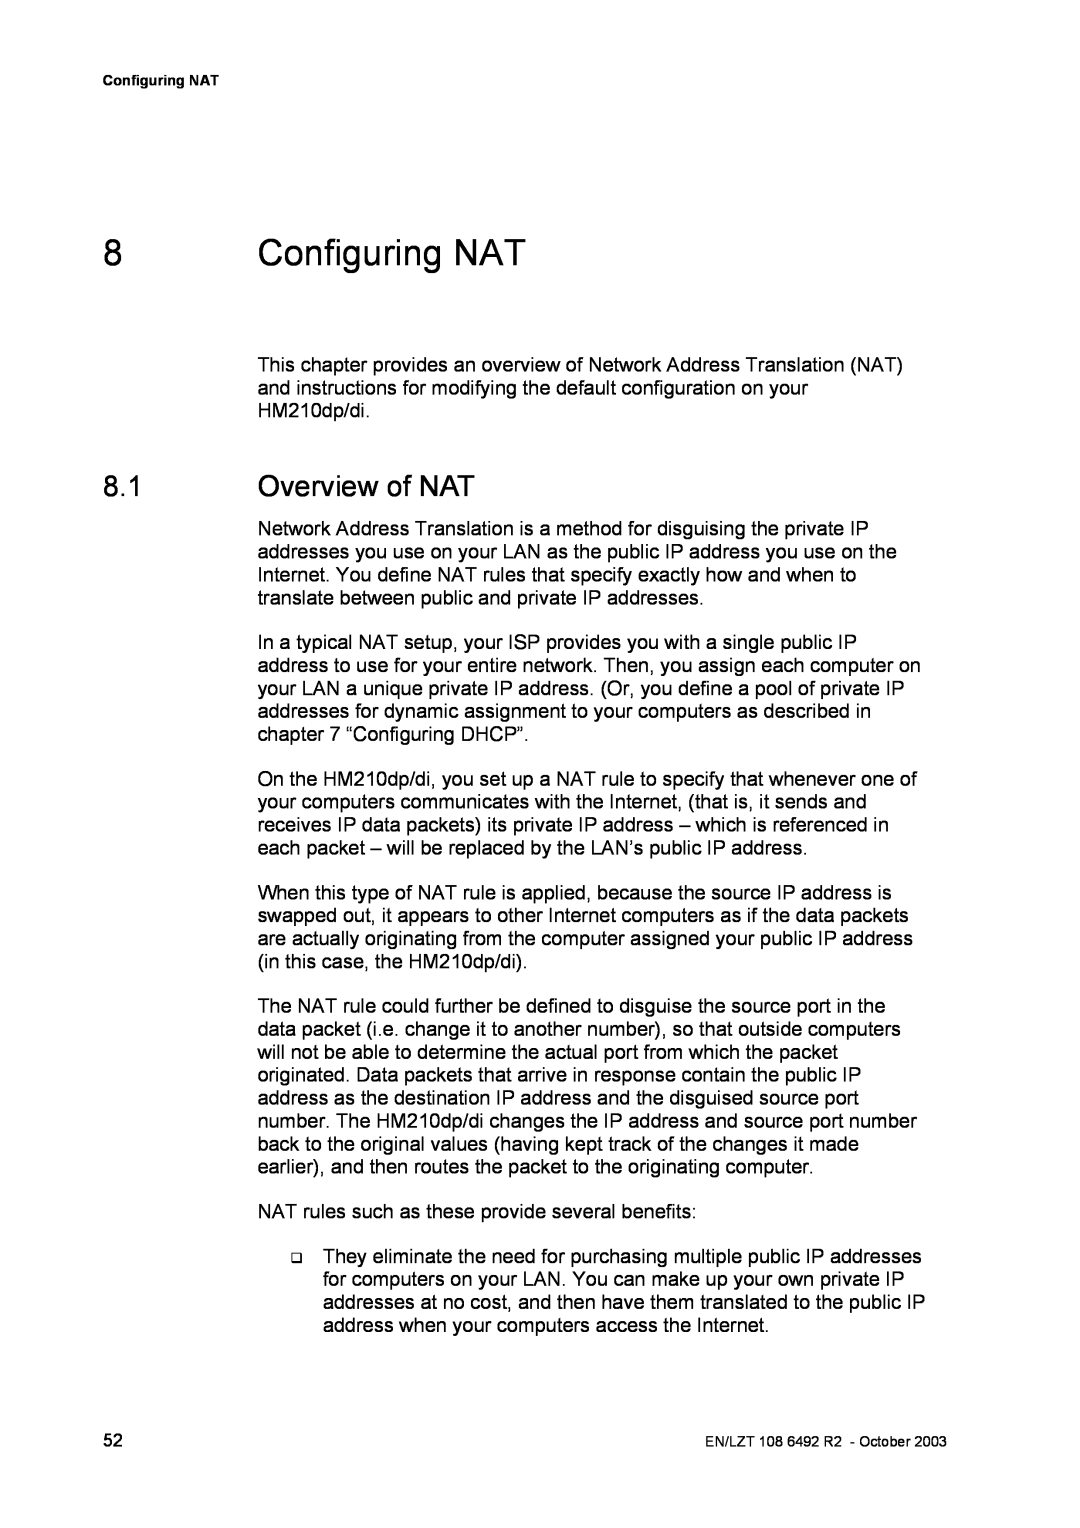 Garmin HM210DP/DI manual Configuring NAT, Overview of NAT 